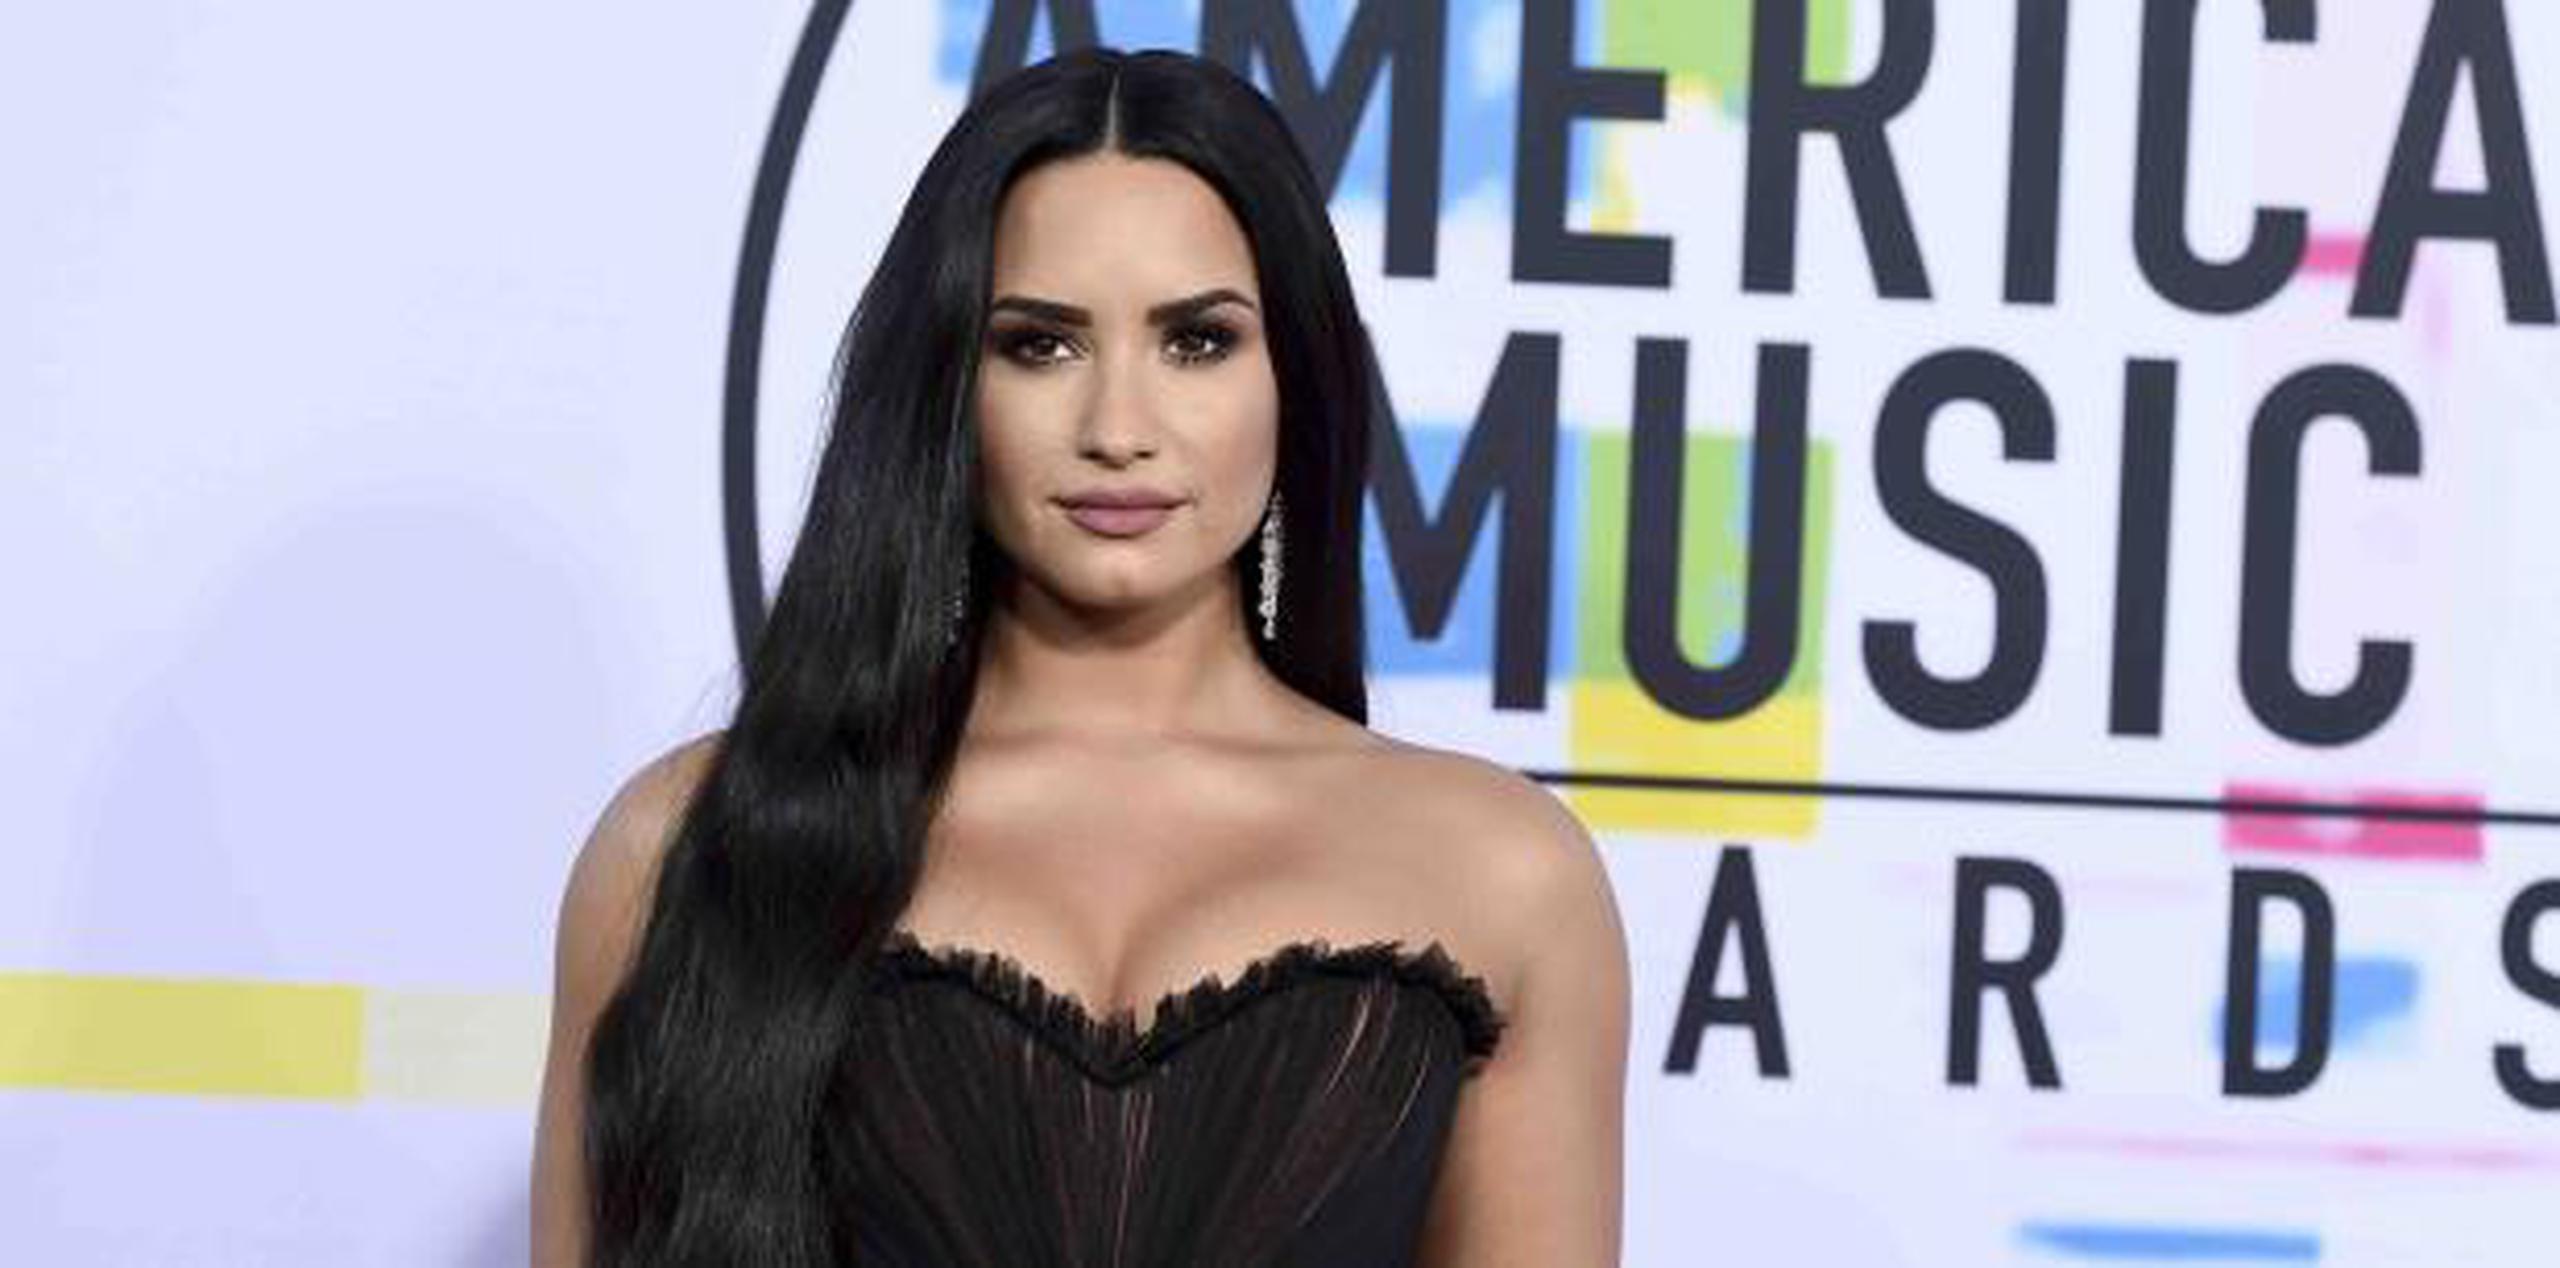 El representante de Demi Lovato dijo el martes que la joven artista estaba despierta y recuperándose con su familia tras ser hospitalizada, según reportes, por una sobredosis. (AP)